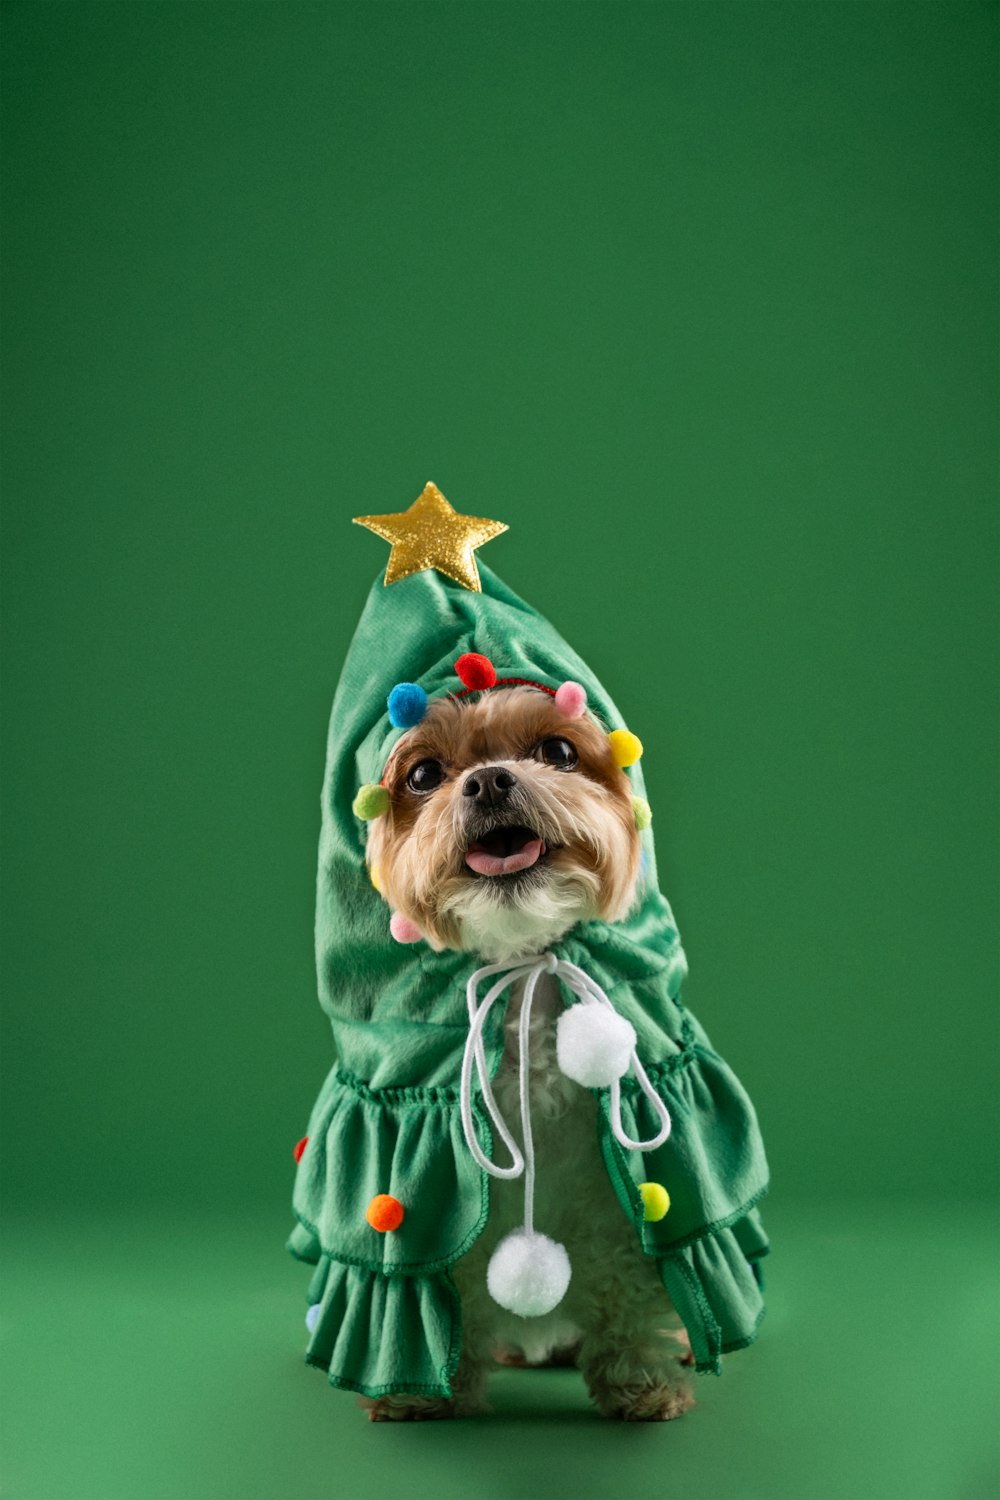 녹색 크리스마스 트리 의상을 입은 작은 개